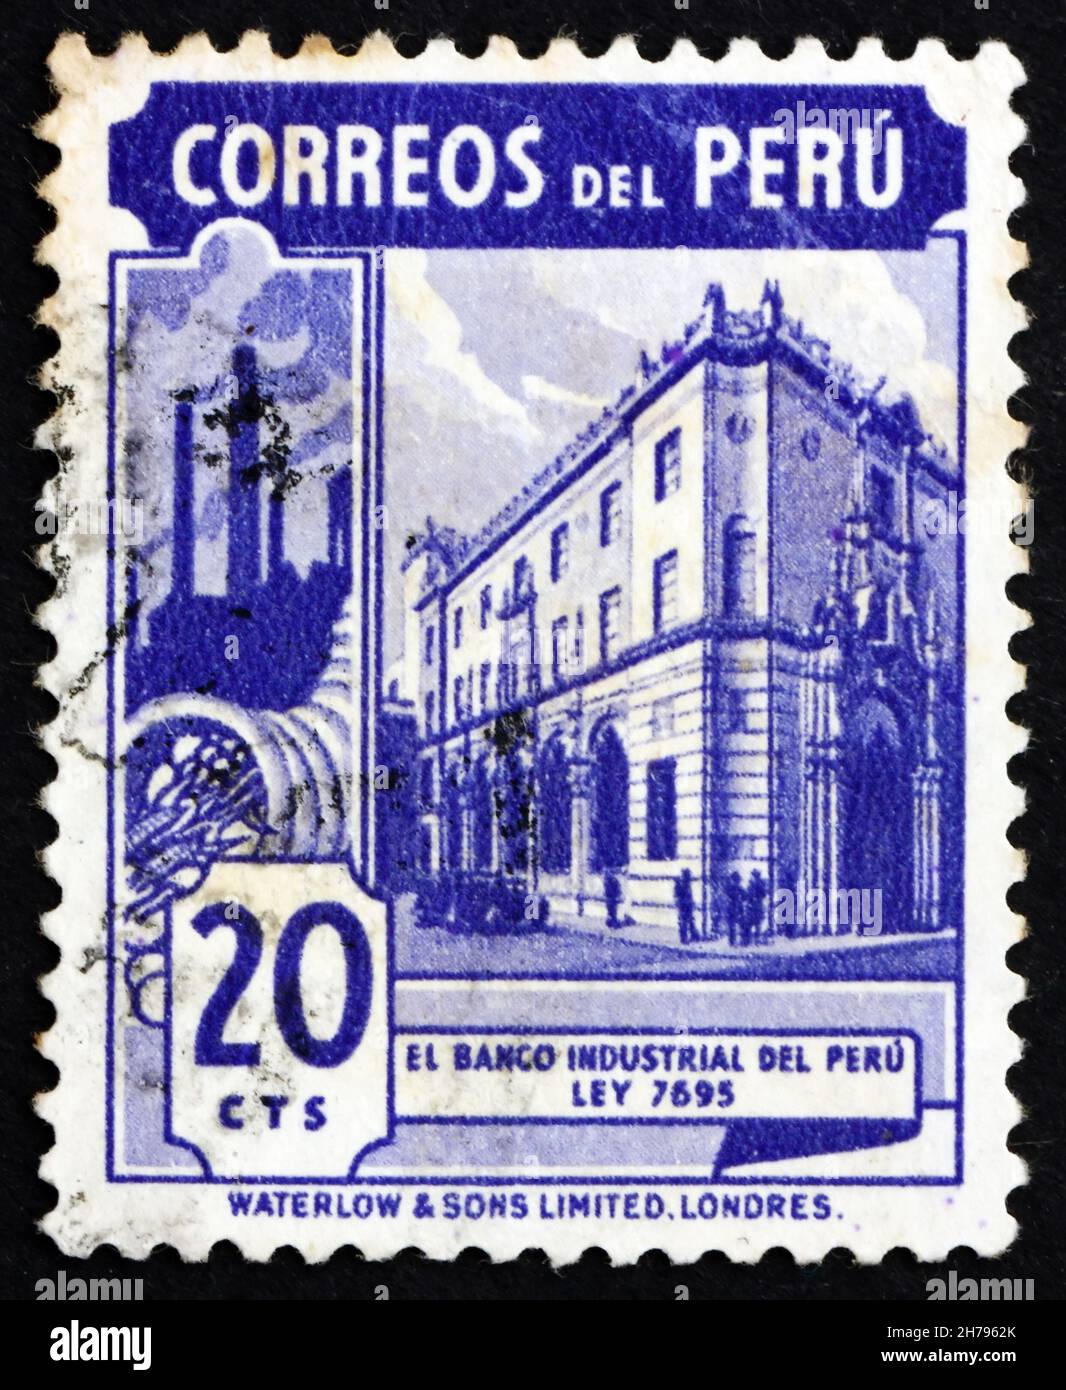 PÉROU - VERS 1949: Un timbre imprimé au Pérou montre la Banque industrielle du Pérou, vers 1949 Banque D'Images